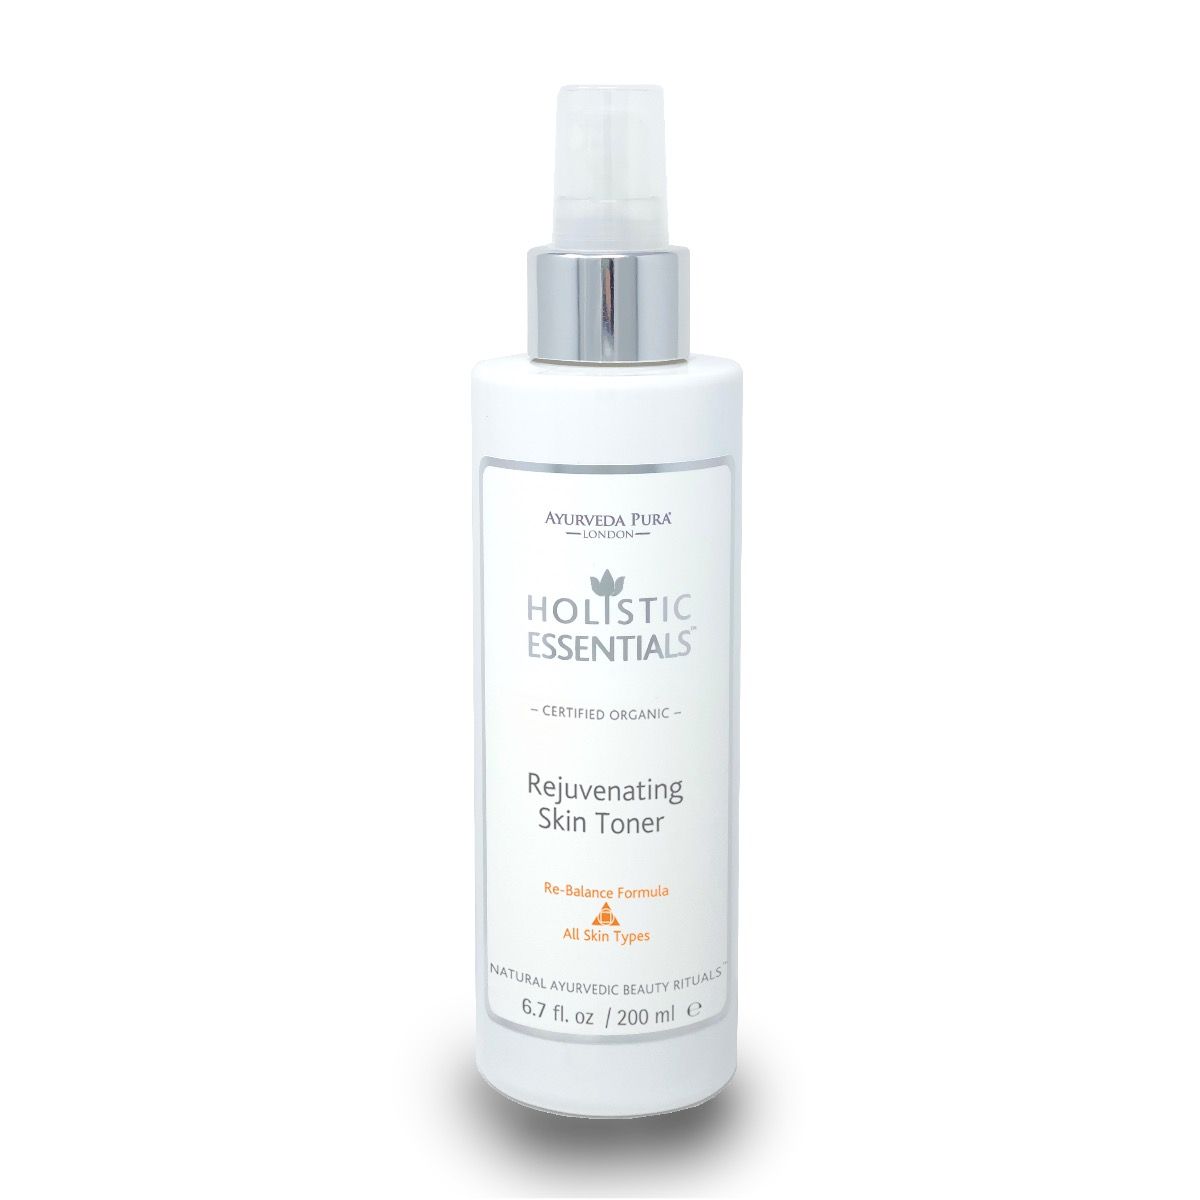 Rejuvenating Skin Toner - Re-Balance Formula (Tridoshic) - 200ml - Certified Organic